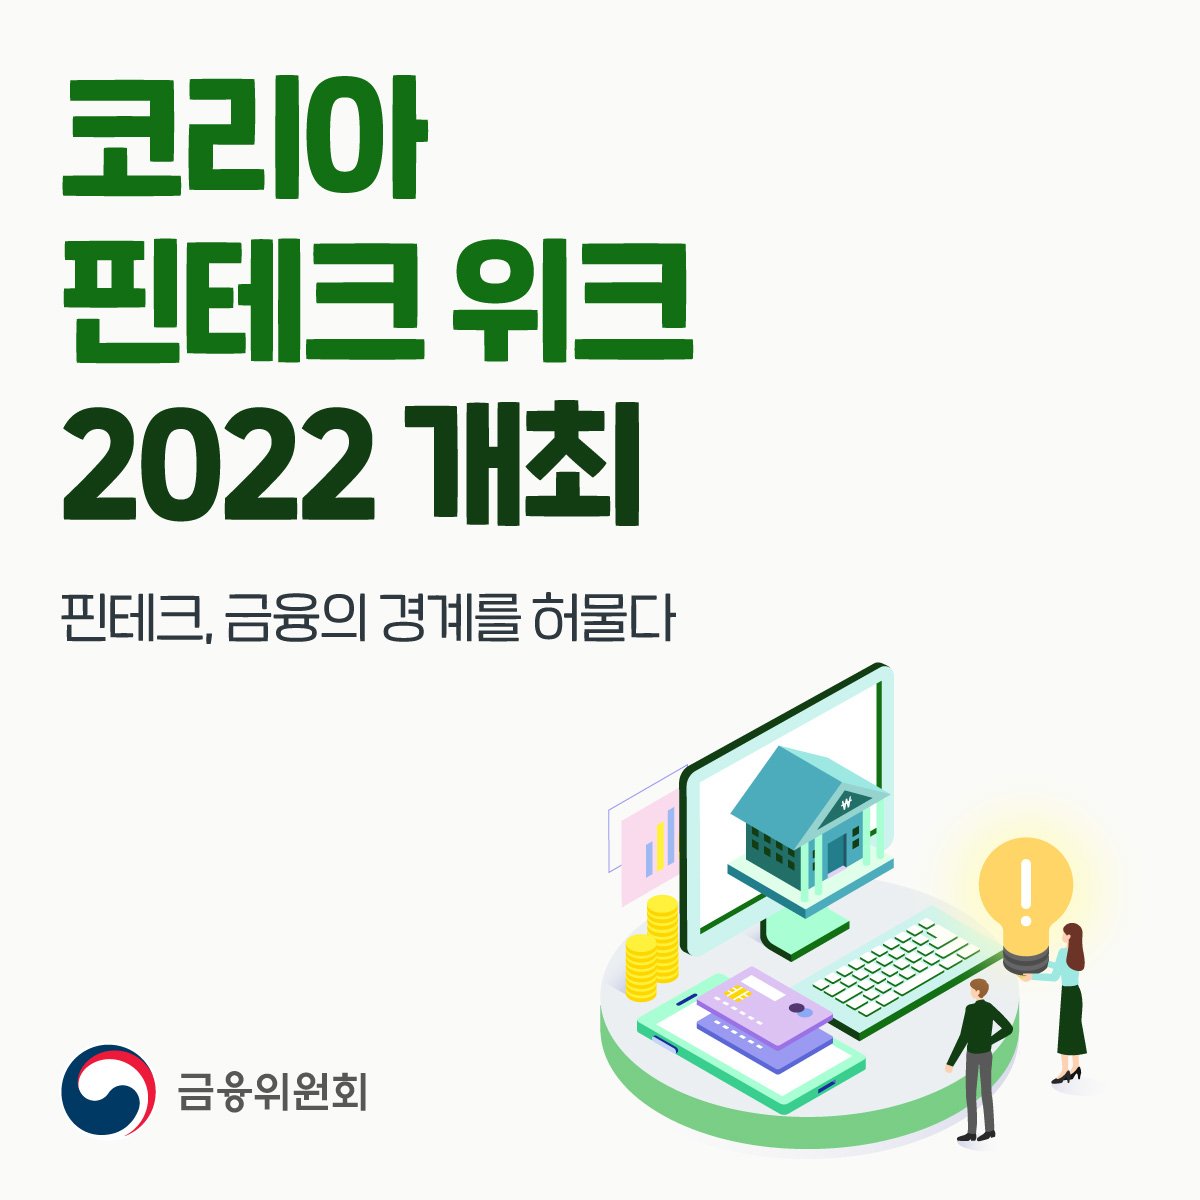 코리아 핀테크 위크 2022 개최. 핀테크, 금융의 경계를 허물다